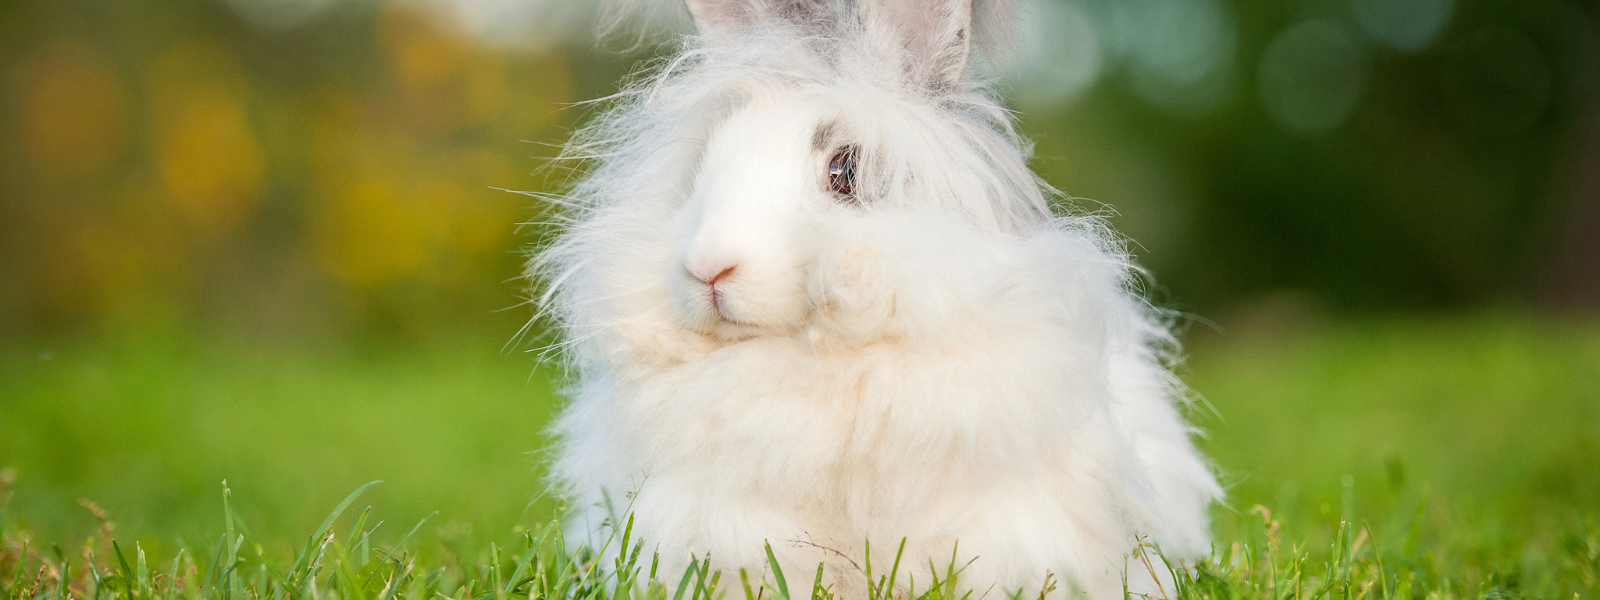 aanvaardbaar natuurpark plakband Het konijn – Bont voor Dieren